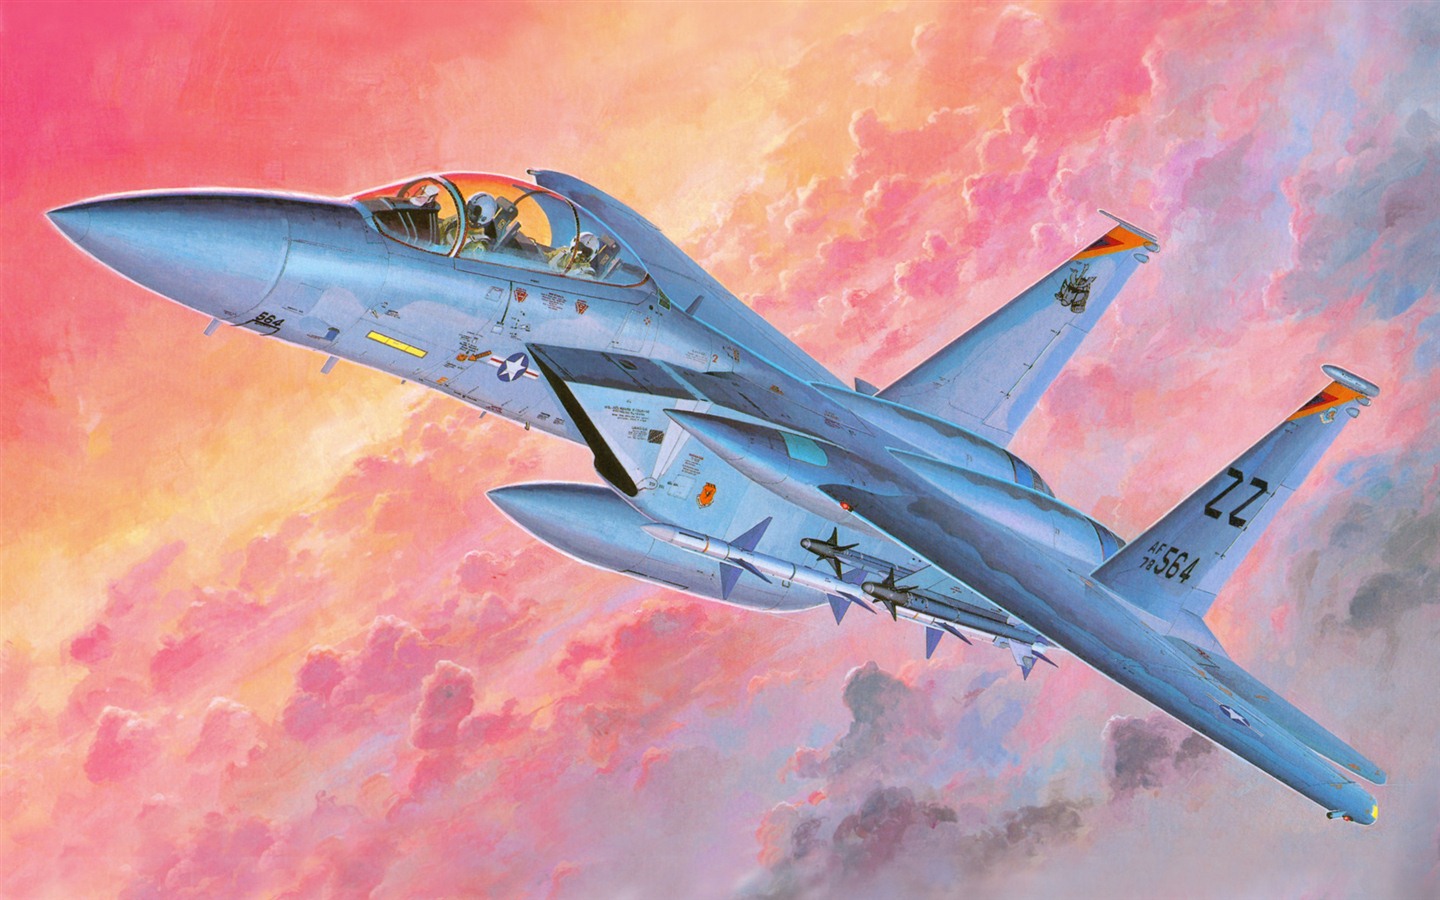 Militares vuelo de las aeronaves exquisitos pintura #15 - 1440x900